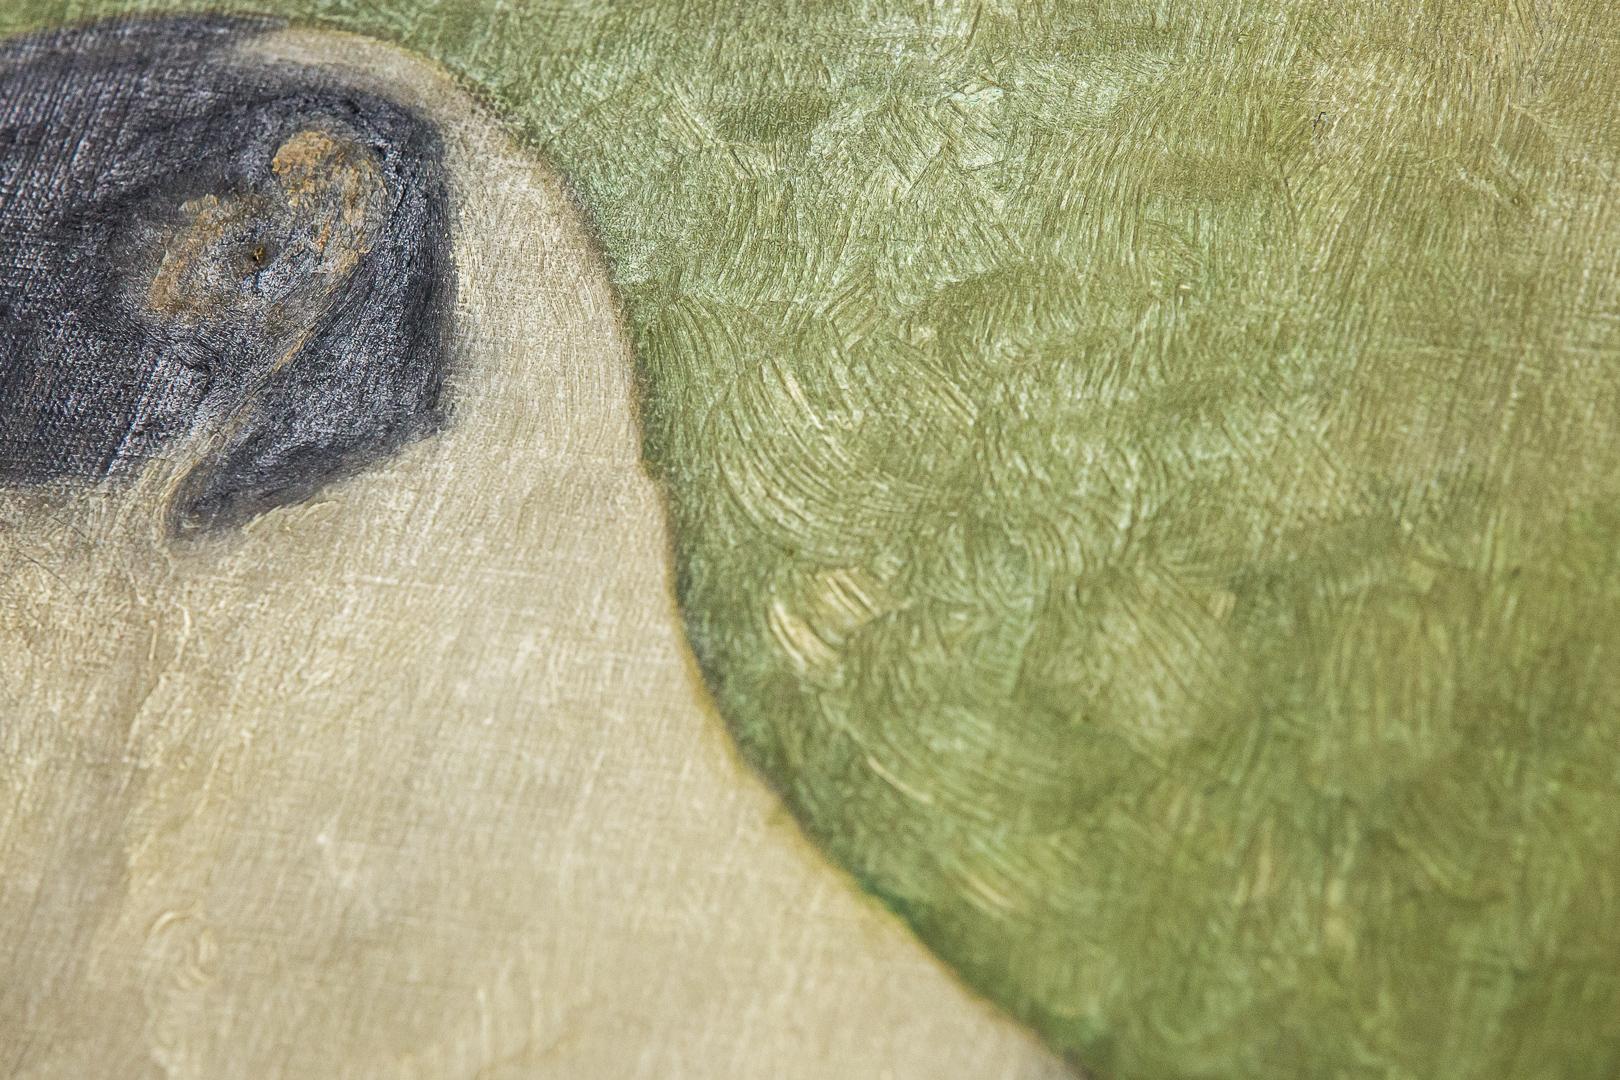 Merveilleuse peinture naïve de Jack Russell terrier, huile sur toile. Pose charmante et détails floraux complexes sur son coussin. France Signé 